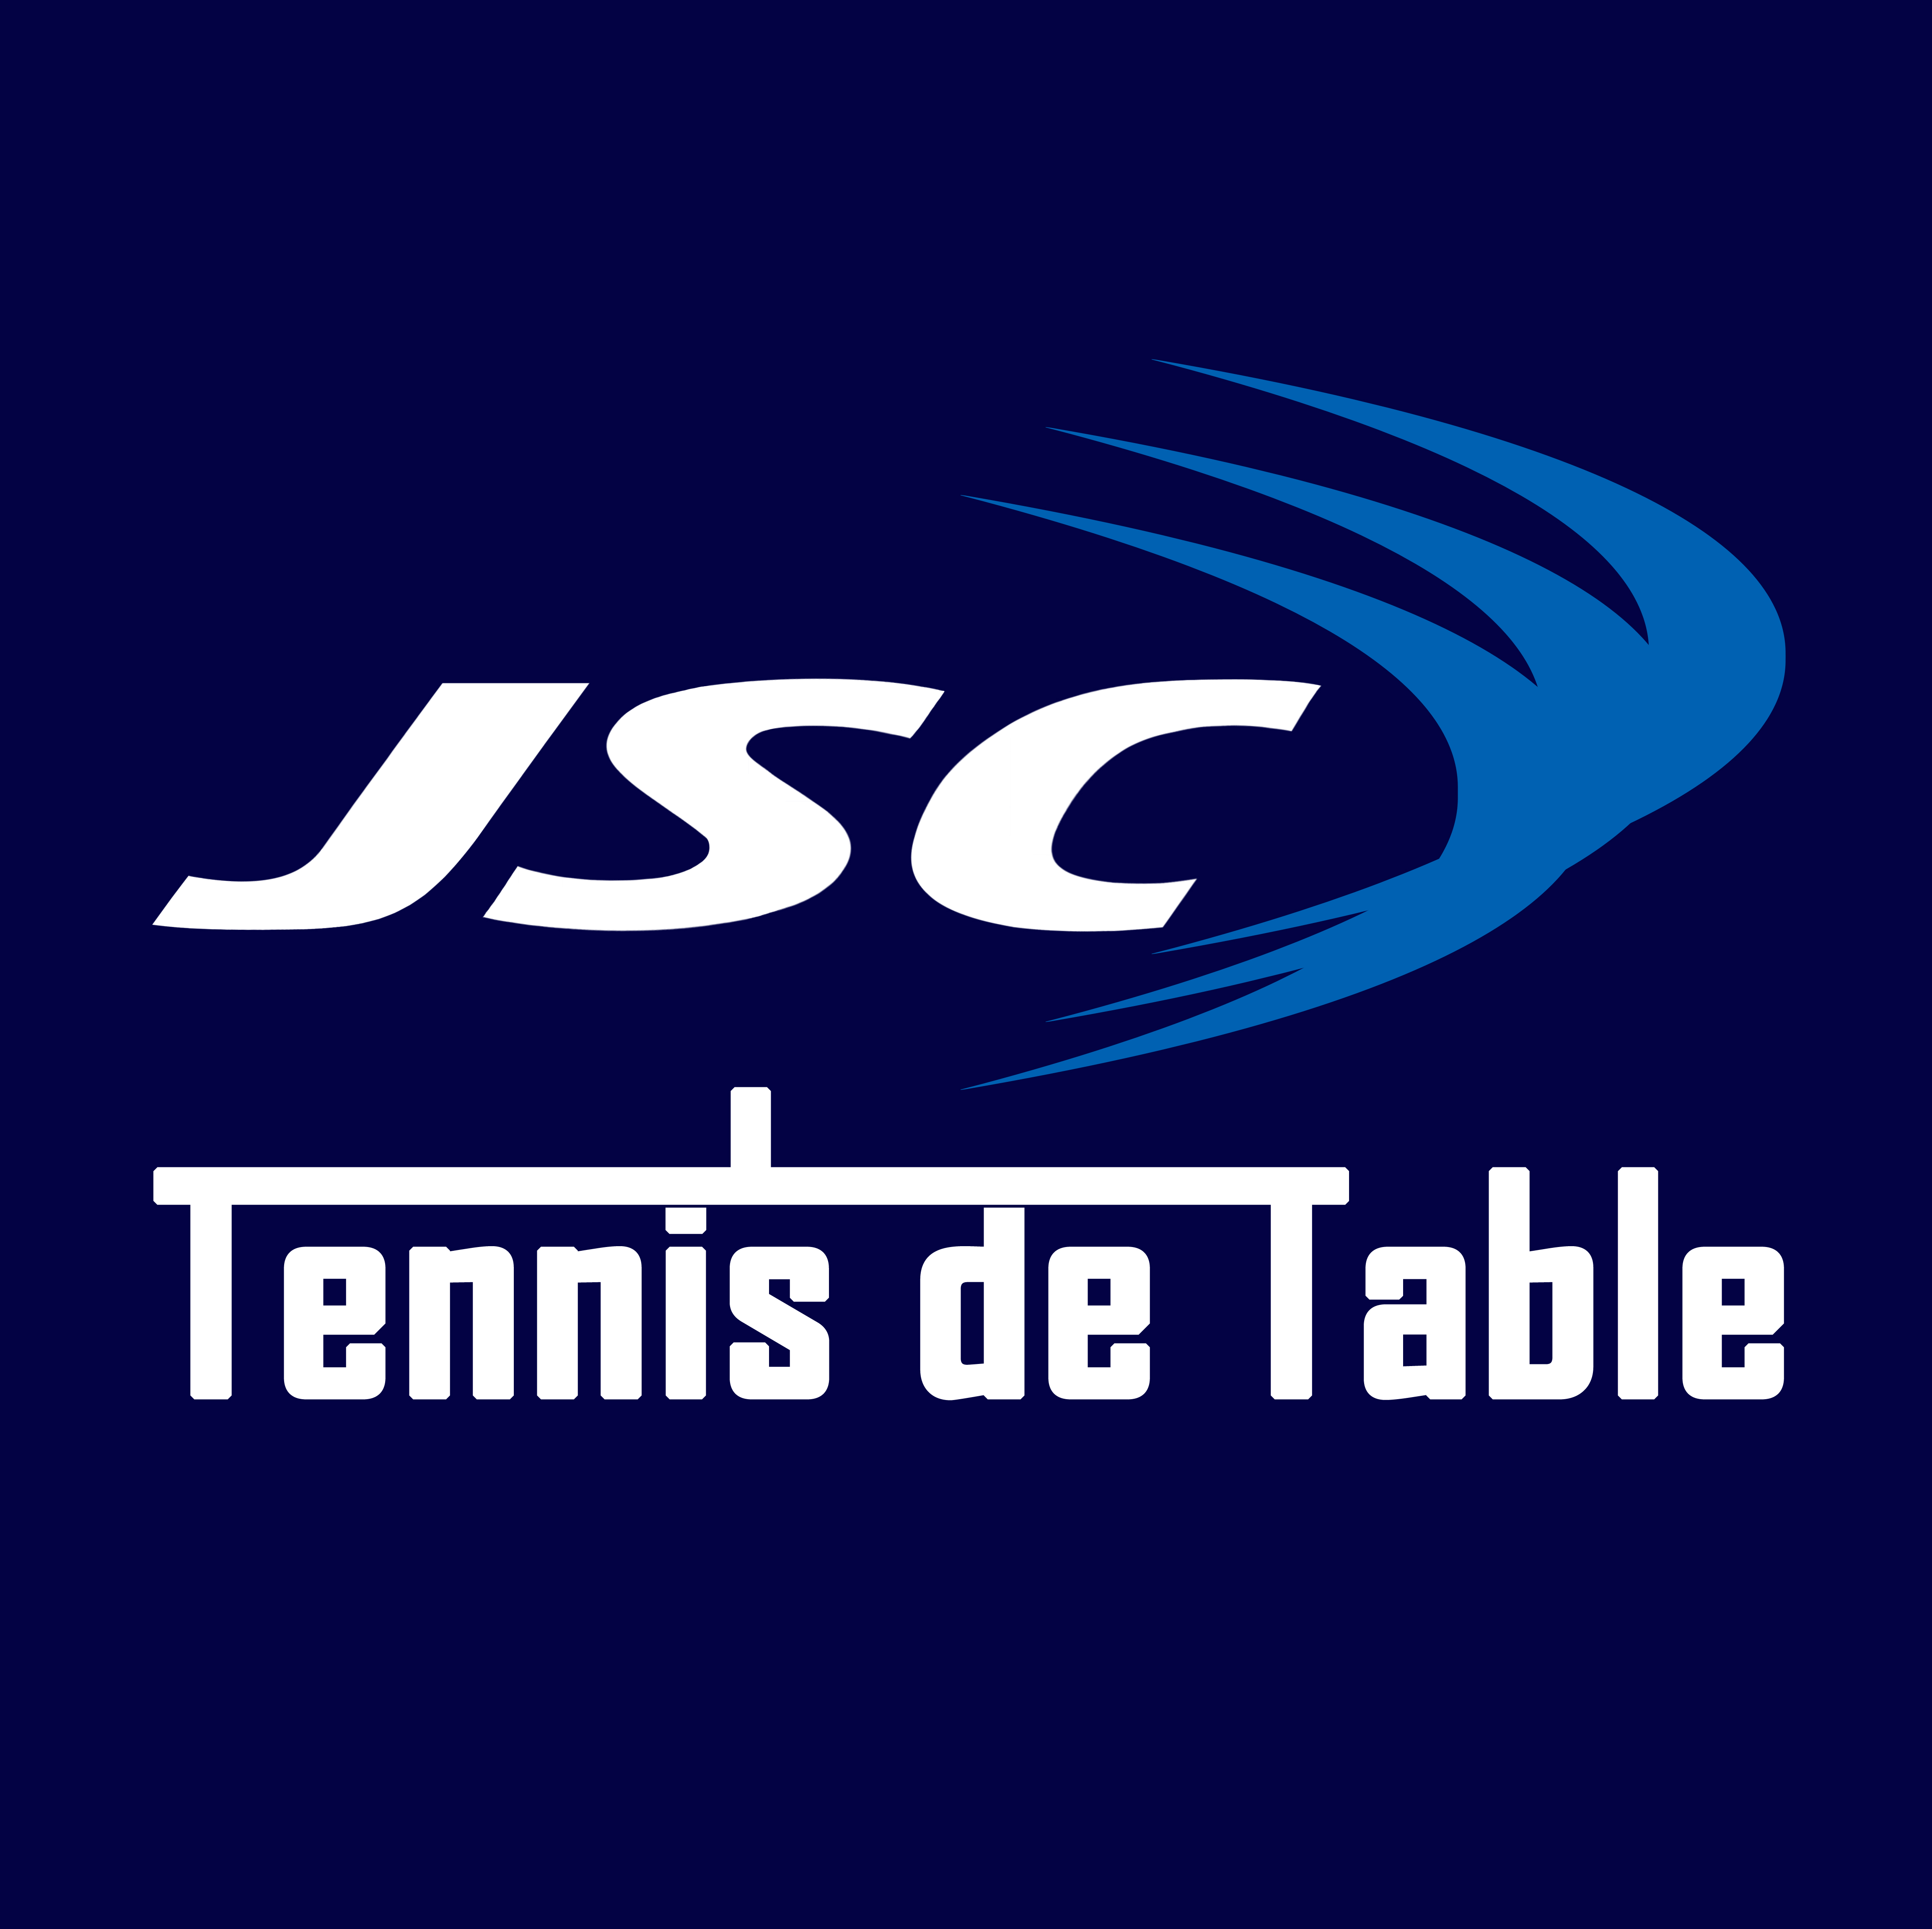 JSC Tennis de table